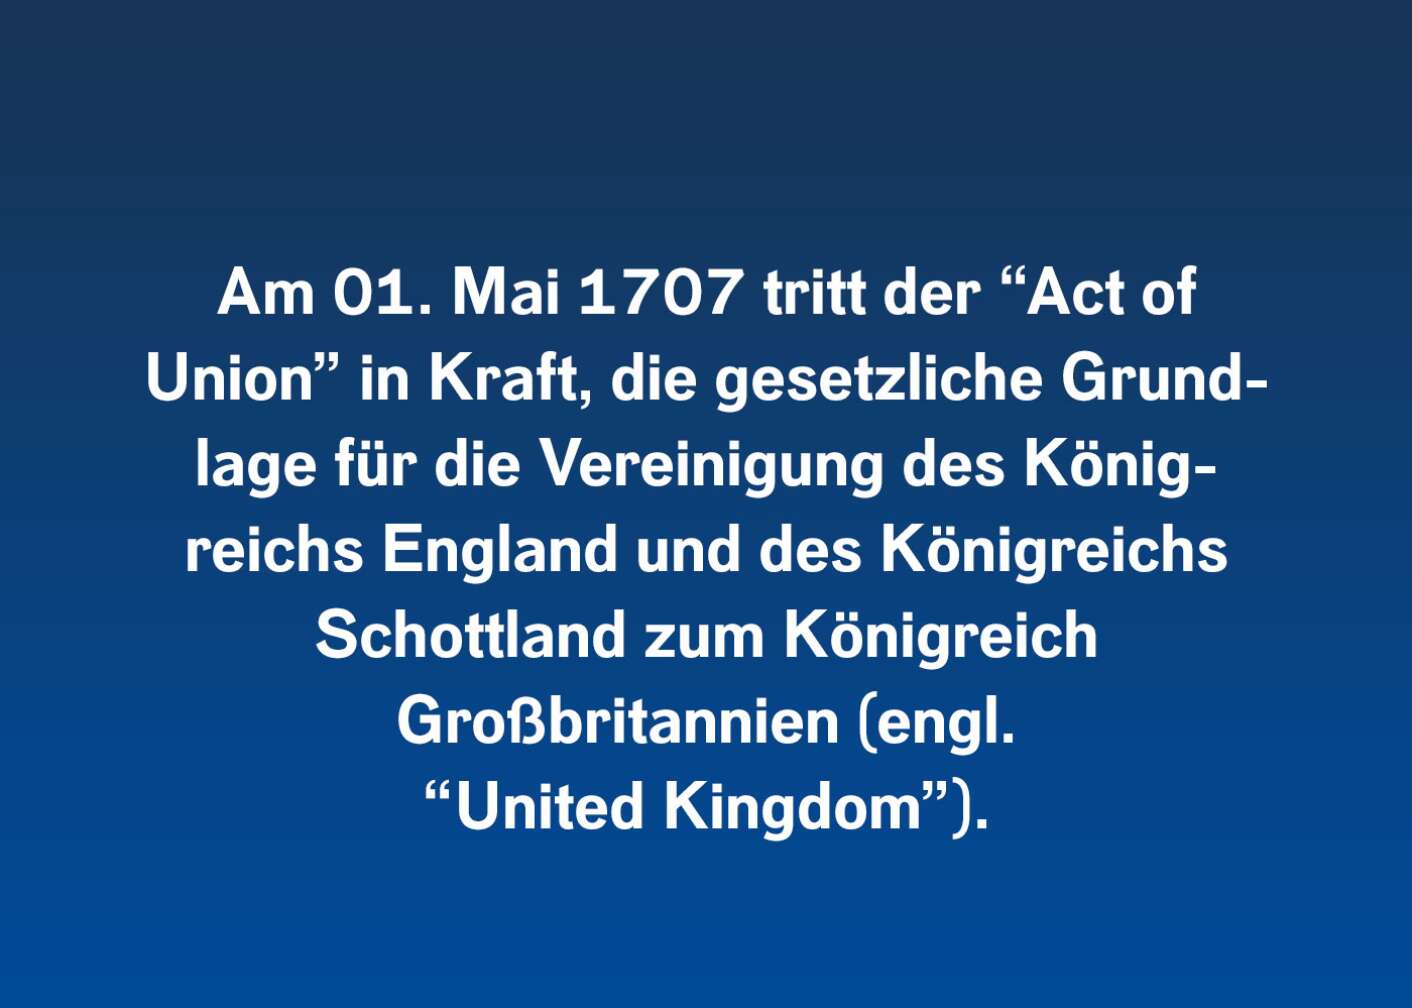 Am 01. Mai 1707 tritt der „Act of Union“ in Kraft, die gesetzliche Grundlage für die Vereinigung des Königsreichs England und des Königreichs Schottland zum Königreich Großbritannien (engl. „United Kingdom“)